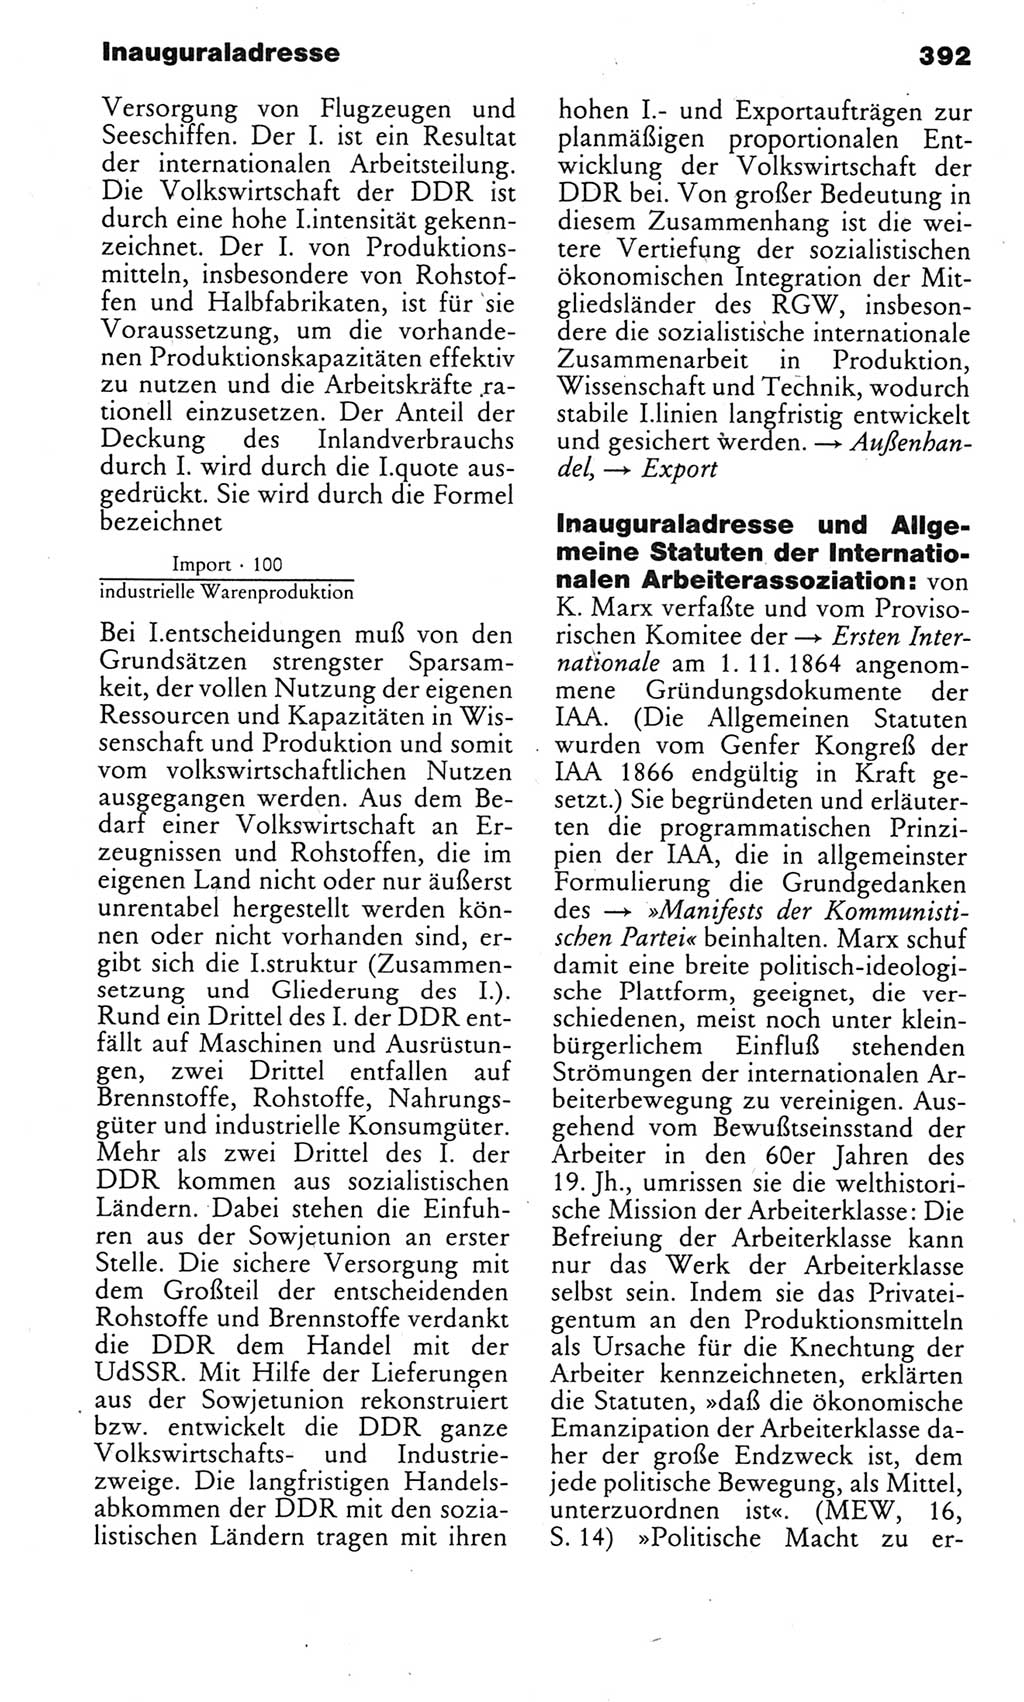 Kleines politisches Wörterbuch [Deutsche Demokratische Republik (DDR)] 1985, Seite 392 (Kl. pol. Wb. DDR 1985, S. 392)